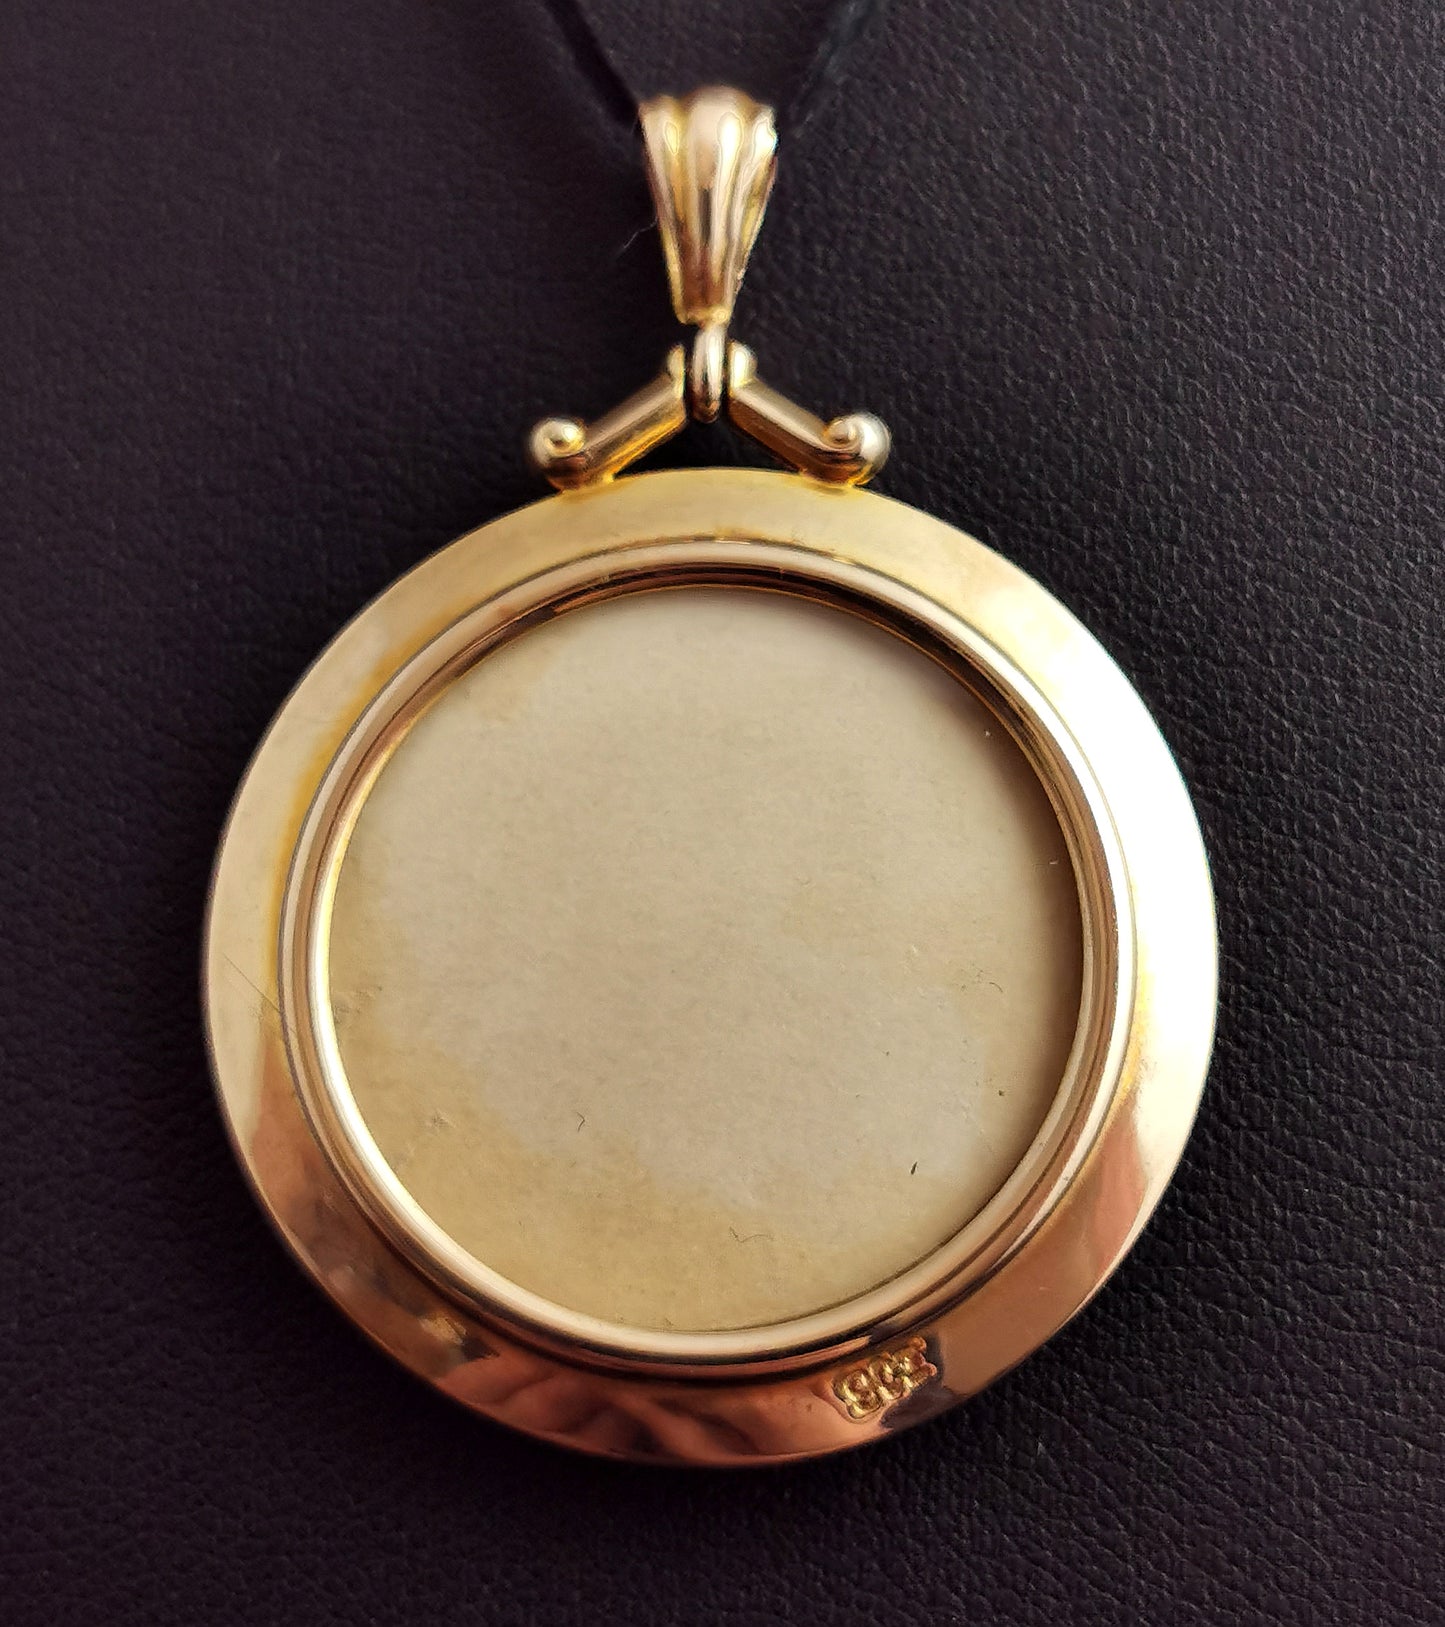 Antique 9ct gold locket pendant, Double sided, Edwardian